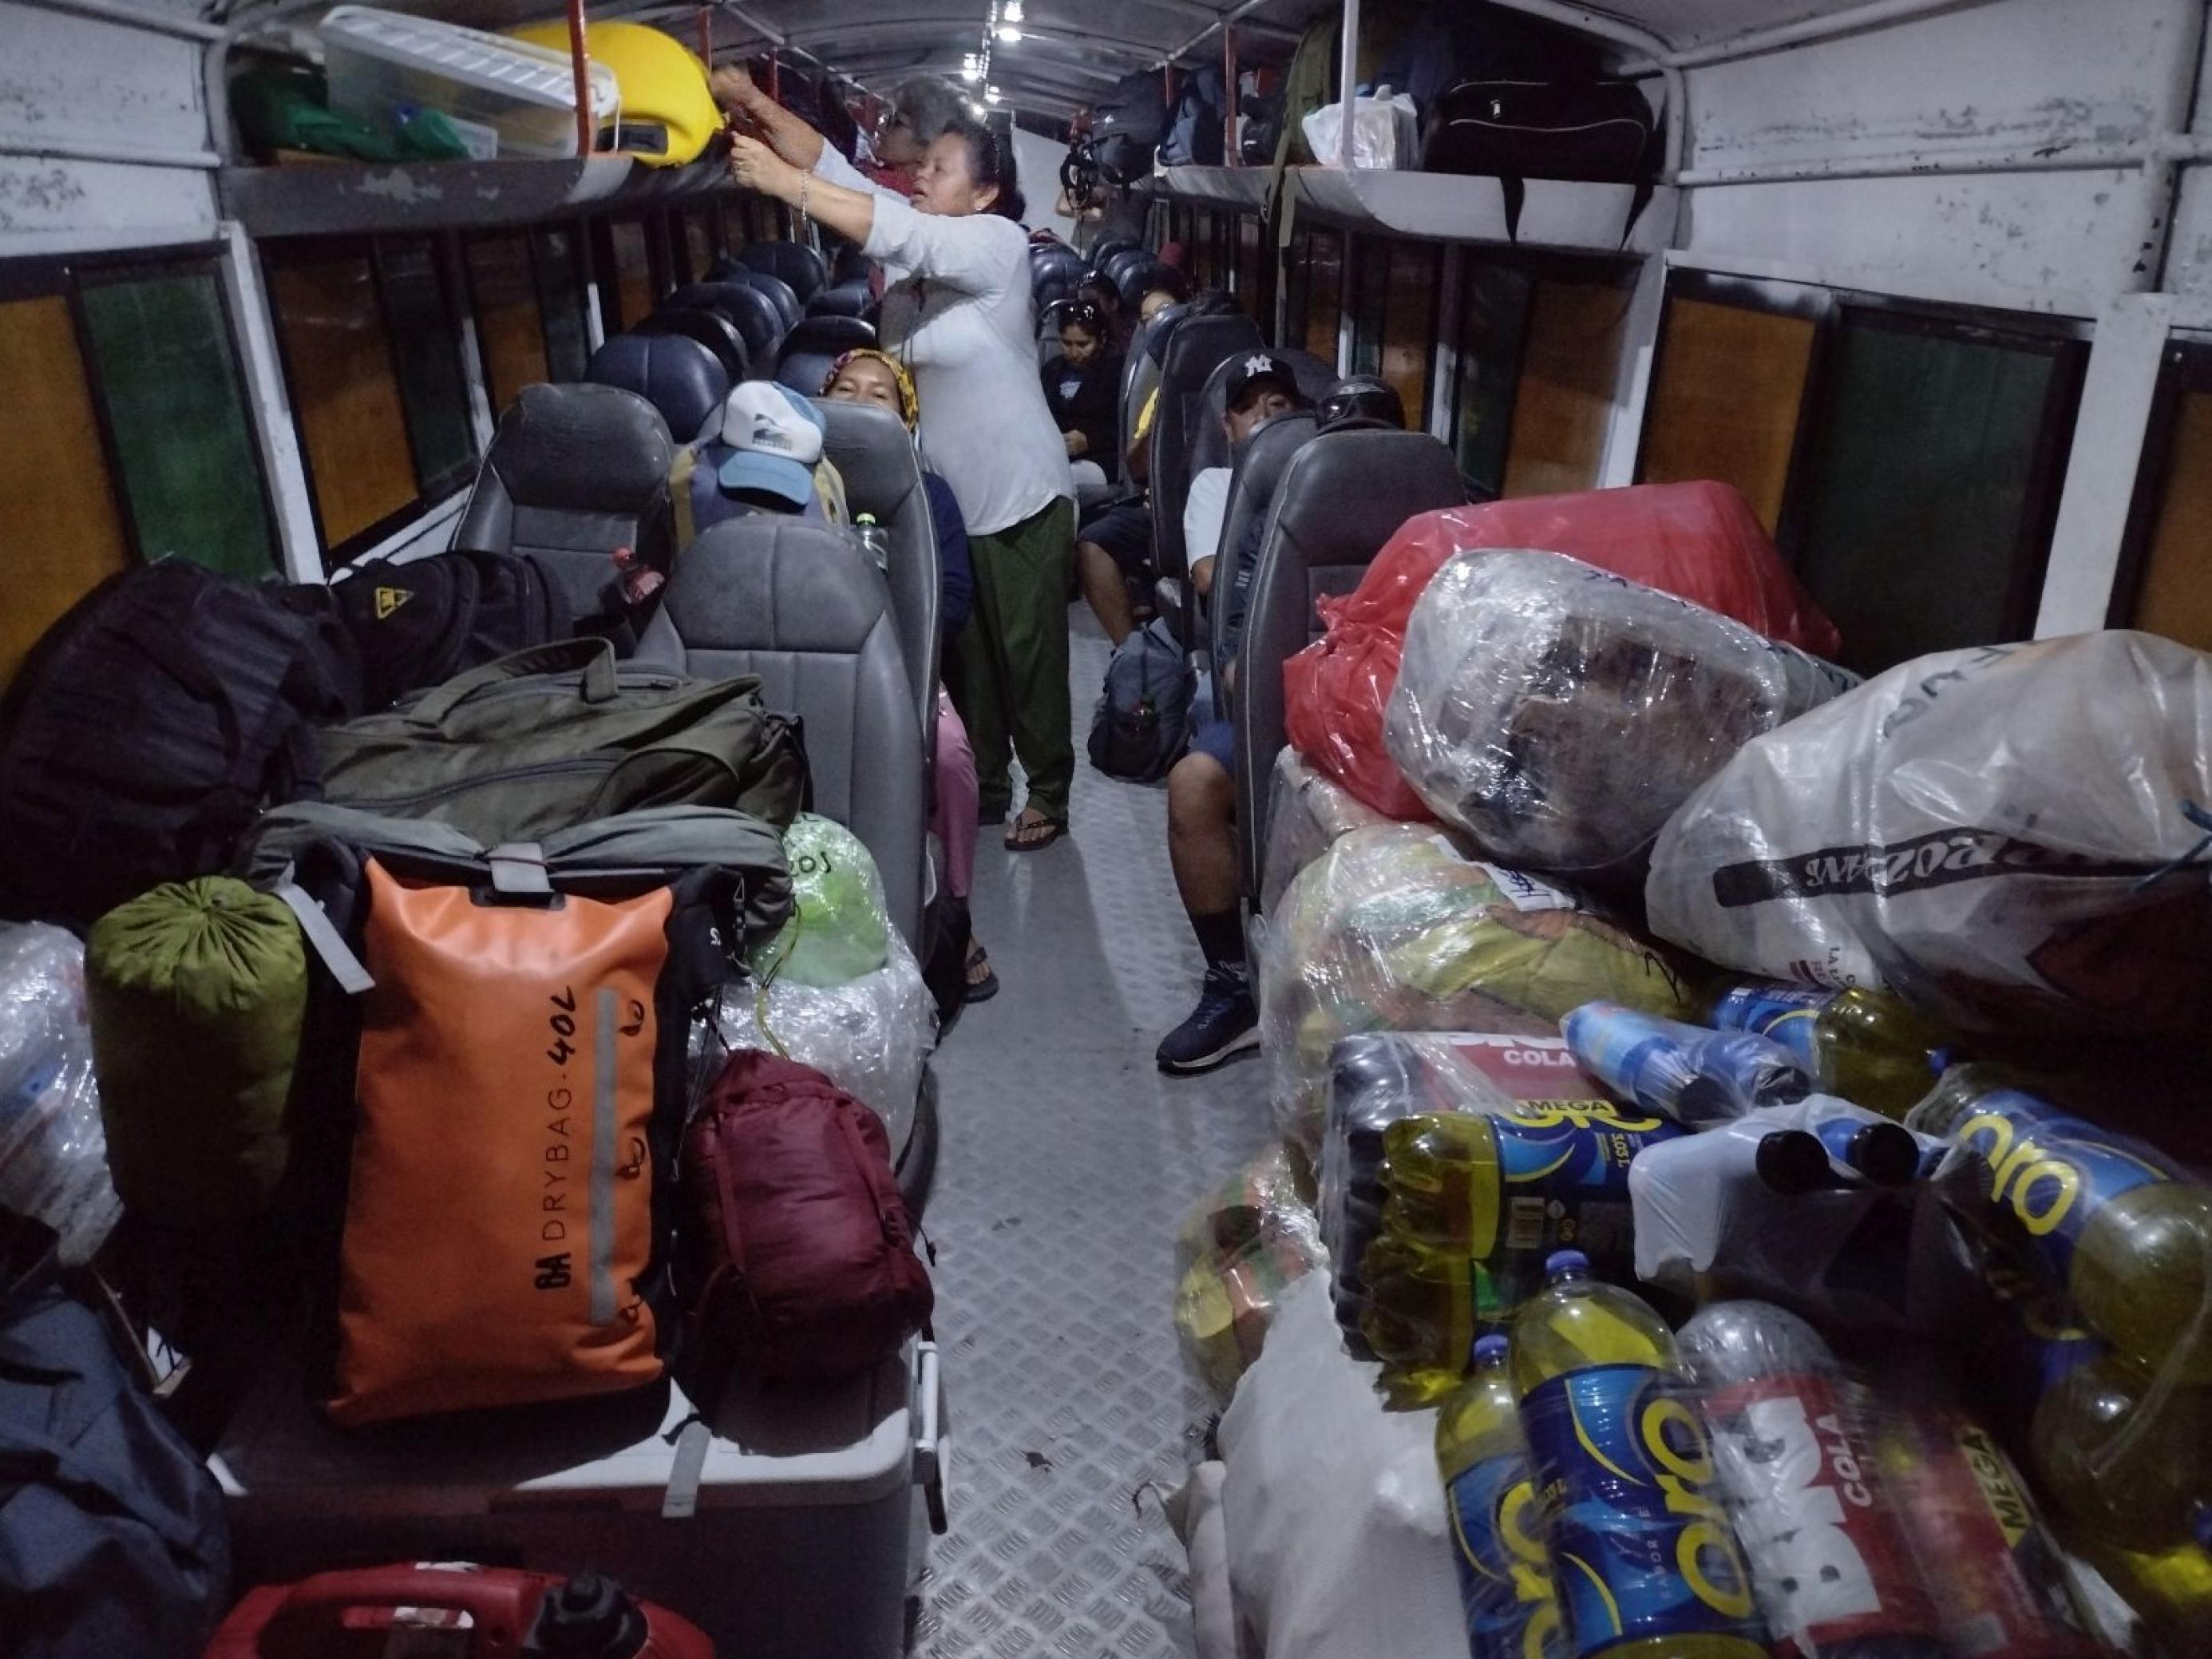 Das Innere eines Motorboots mit Sitzen wie in einem Bus. Passagiere verstauen ihr Gepäck und nehmen Platz.